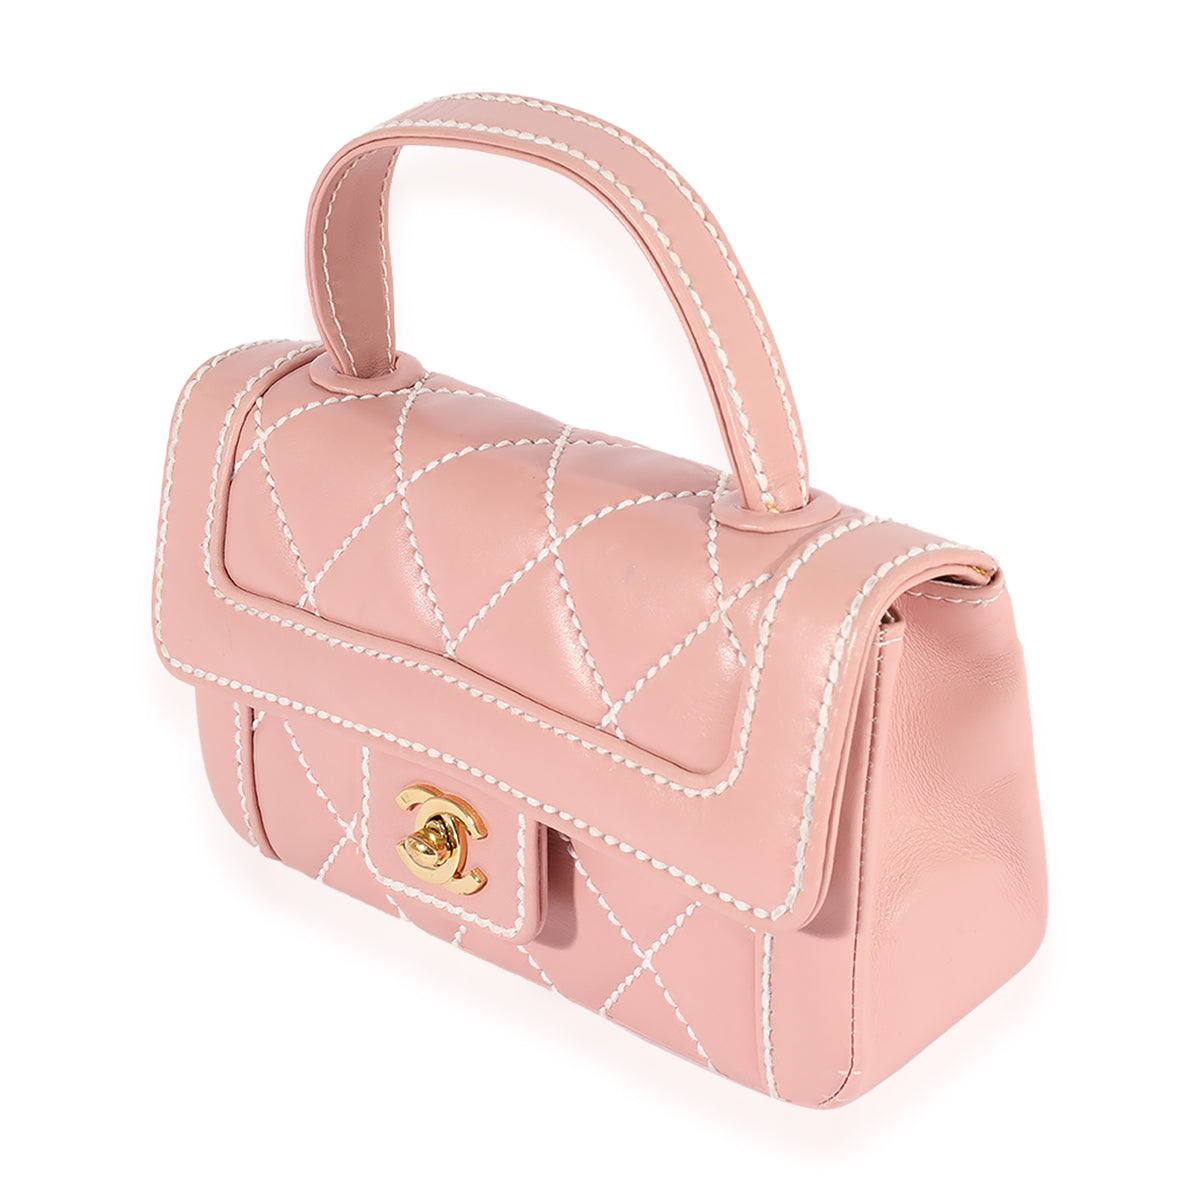 Chanel 2004-2005 * Wild Stitch Handbag Pink Calfskin